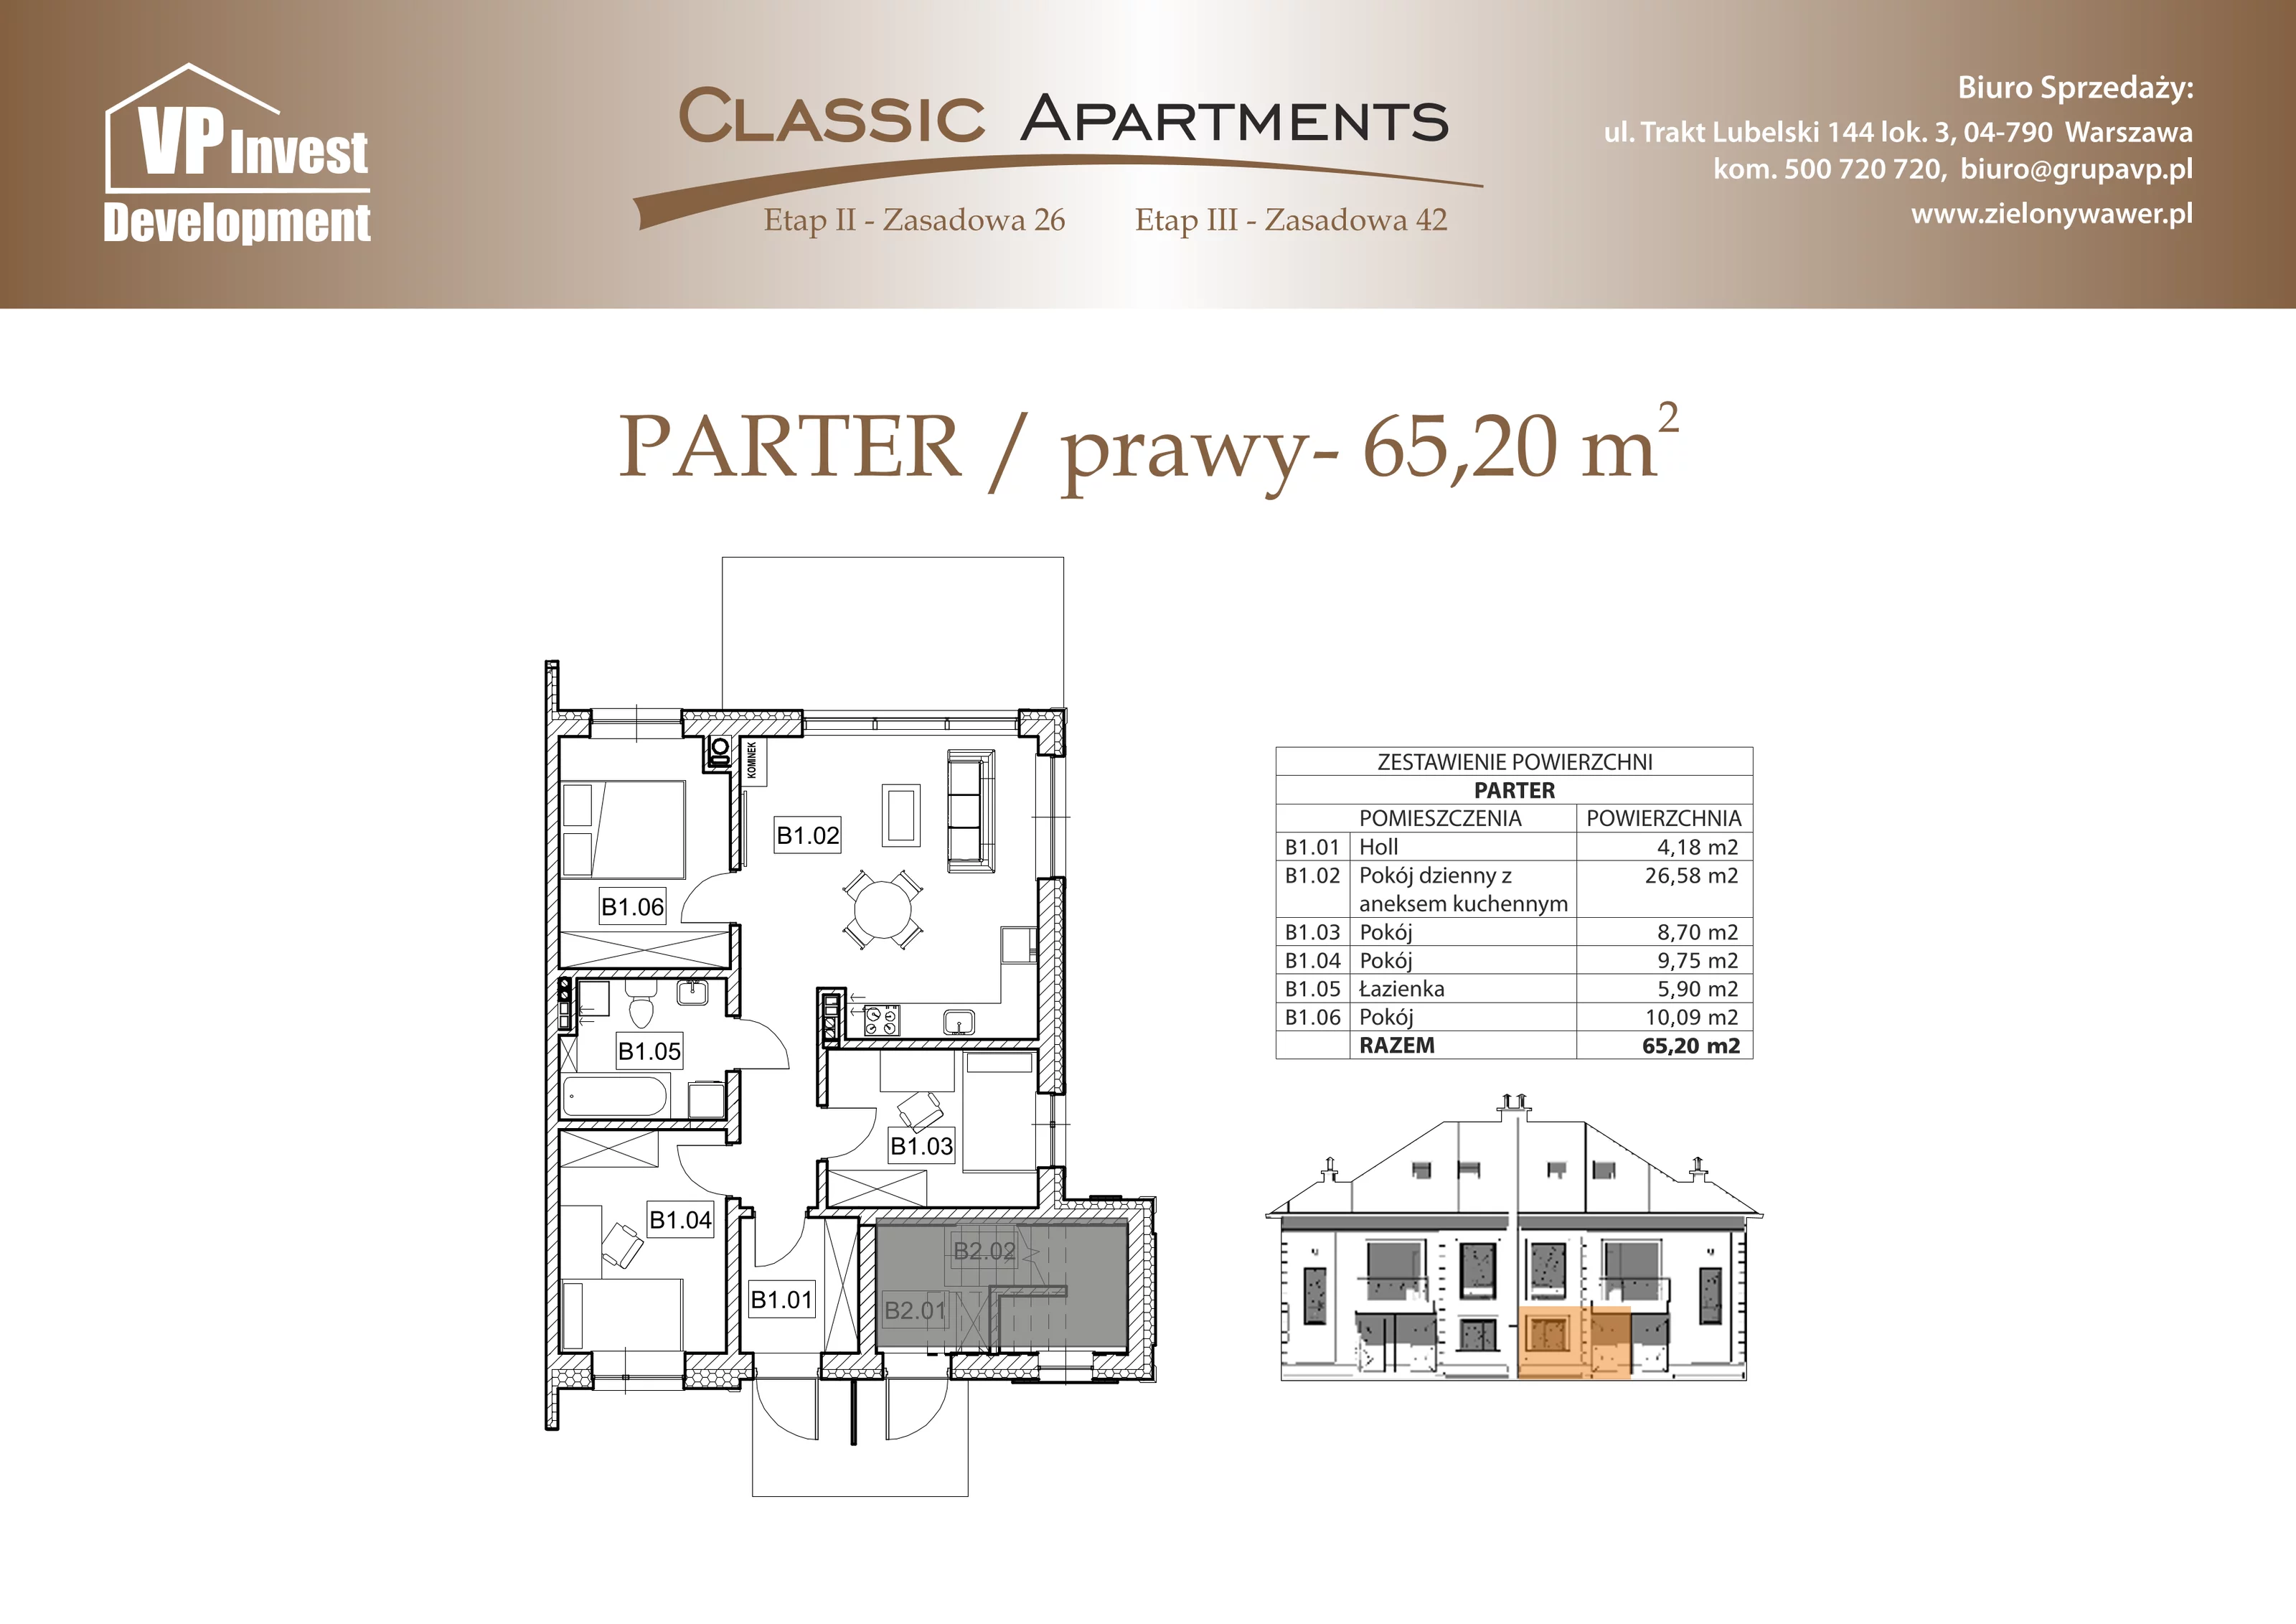 Apartament 65,20 m², parter, oferta nr CA6/13, Classic Apartments II, Warszawa, Wawer, Wawer, ul. Zasadowa 42